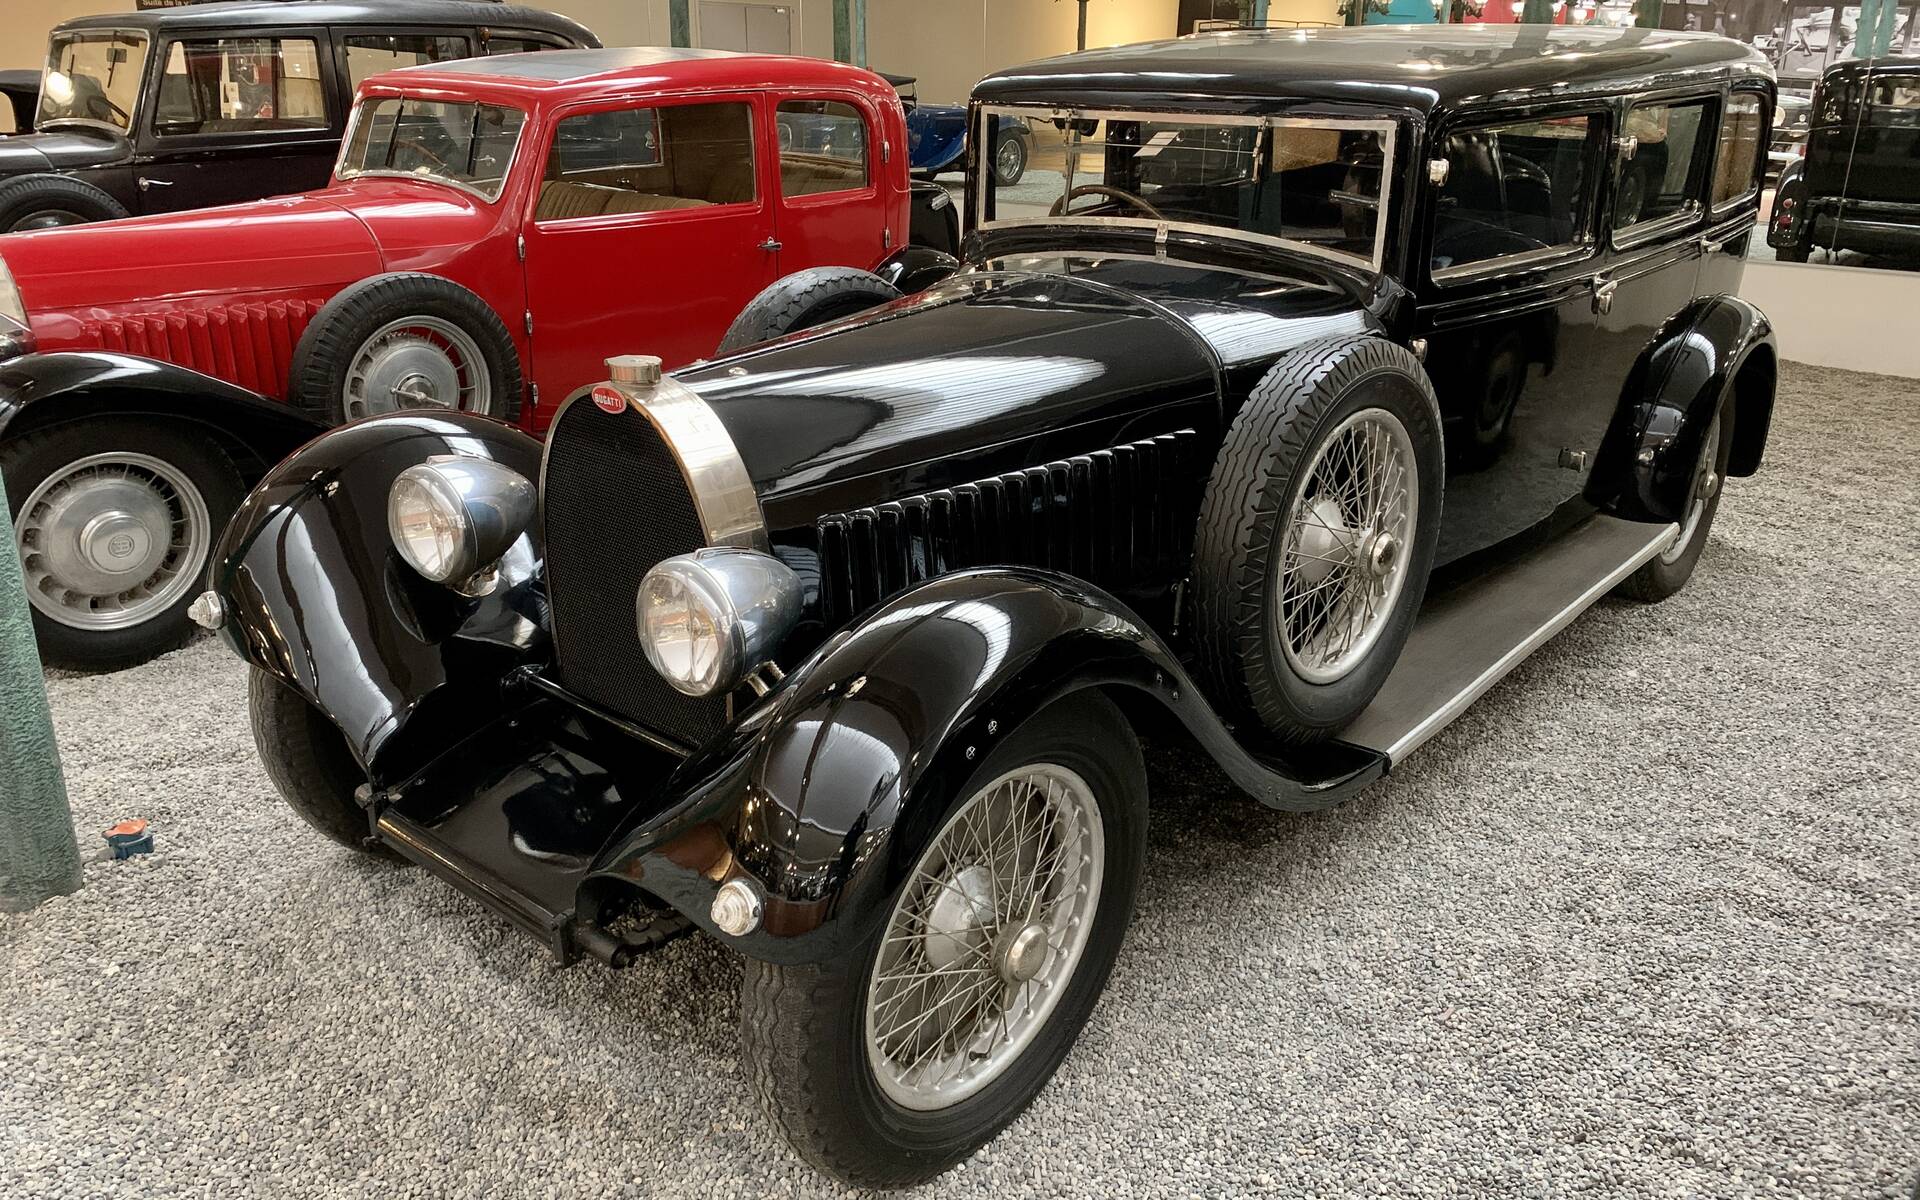 En photos : une centaine de Bugatti réunies dans un même musée 503059-en-photos-des-dizaines-de-bugatti-reunies-dans-un-meme-musee